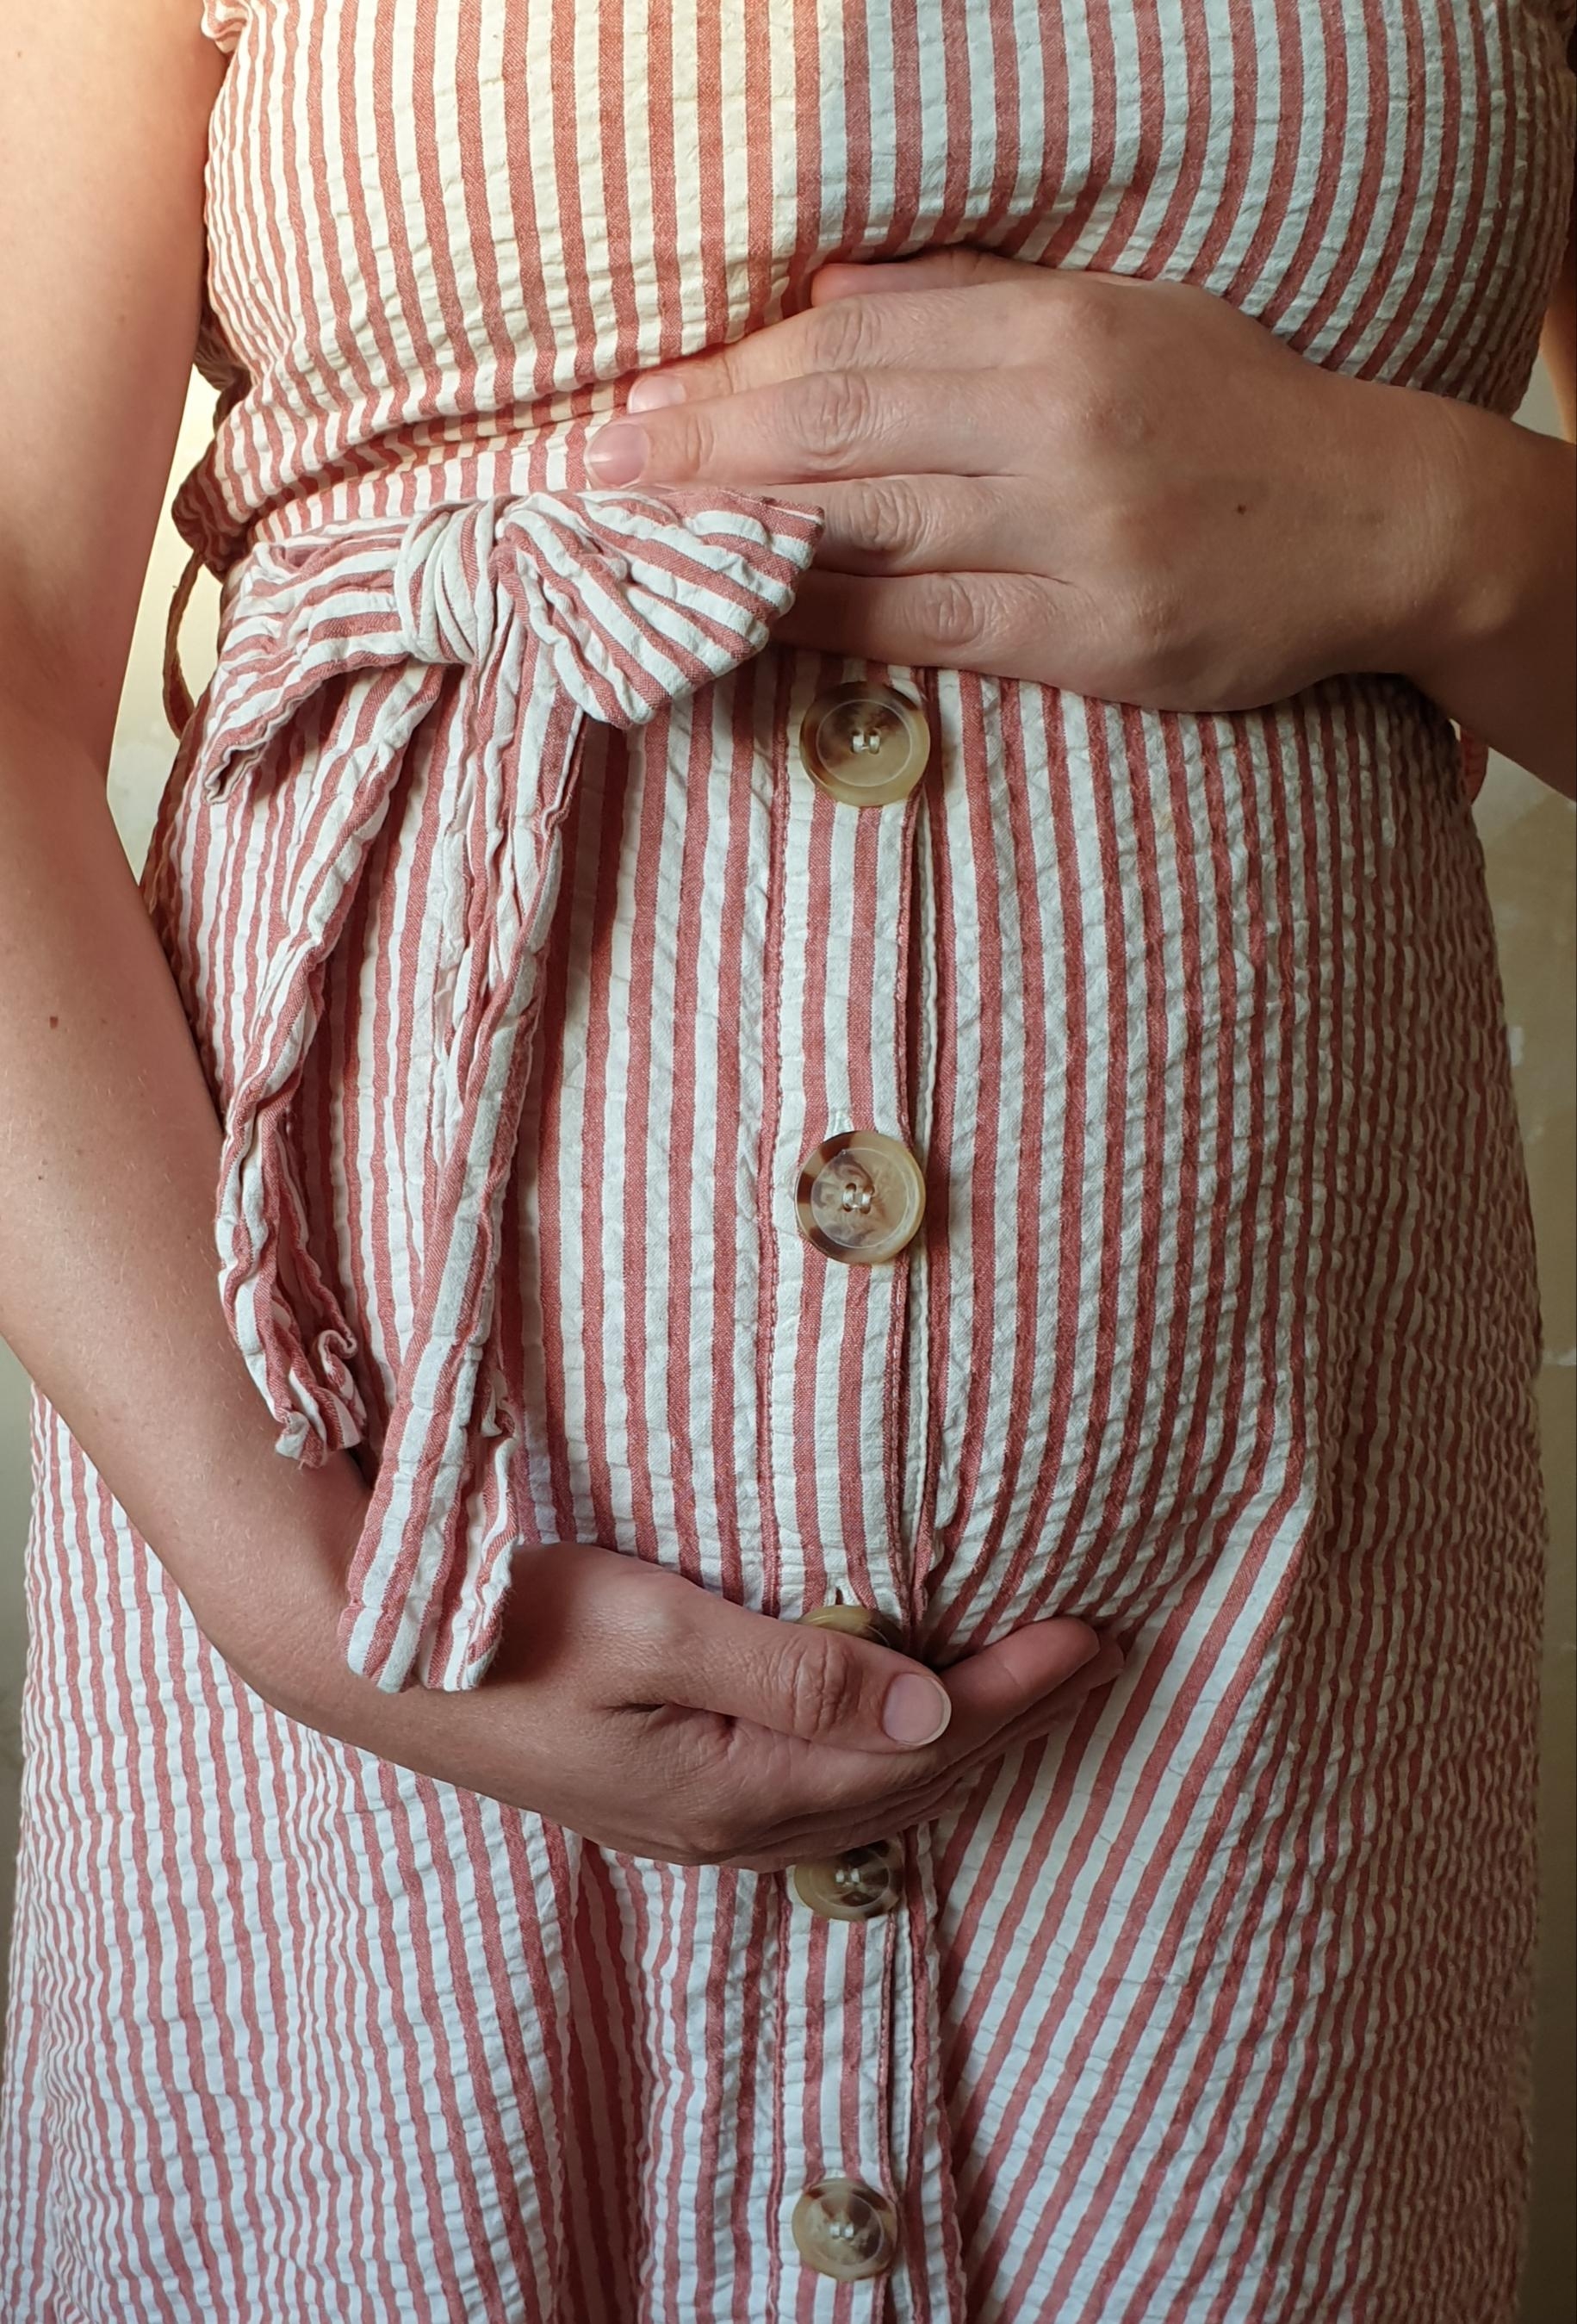 Das Beste mit Babybauch im Sommer-> ein Kleid #sommer #sommerkleid #sommeroutfit #ootd #fashion #pregnant #mommytobe #dr